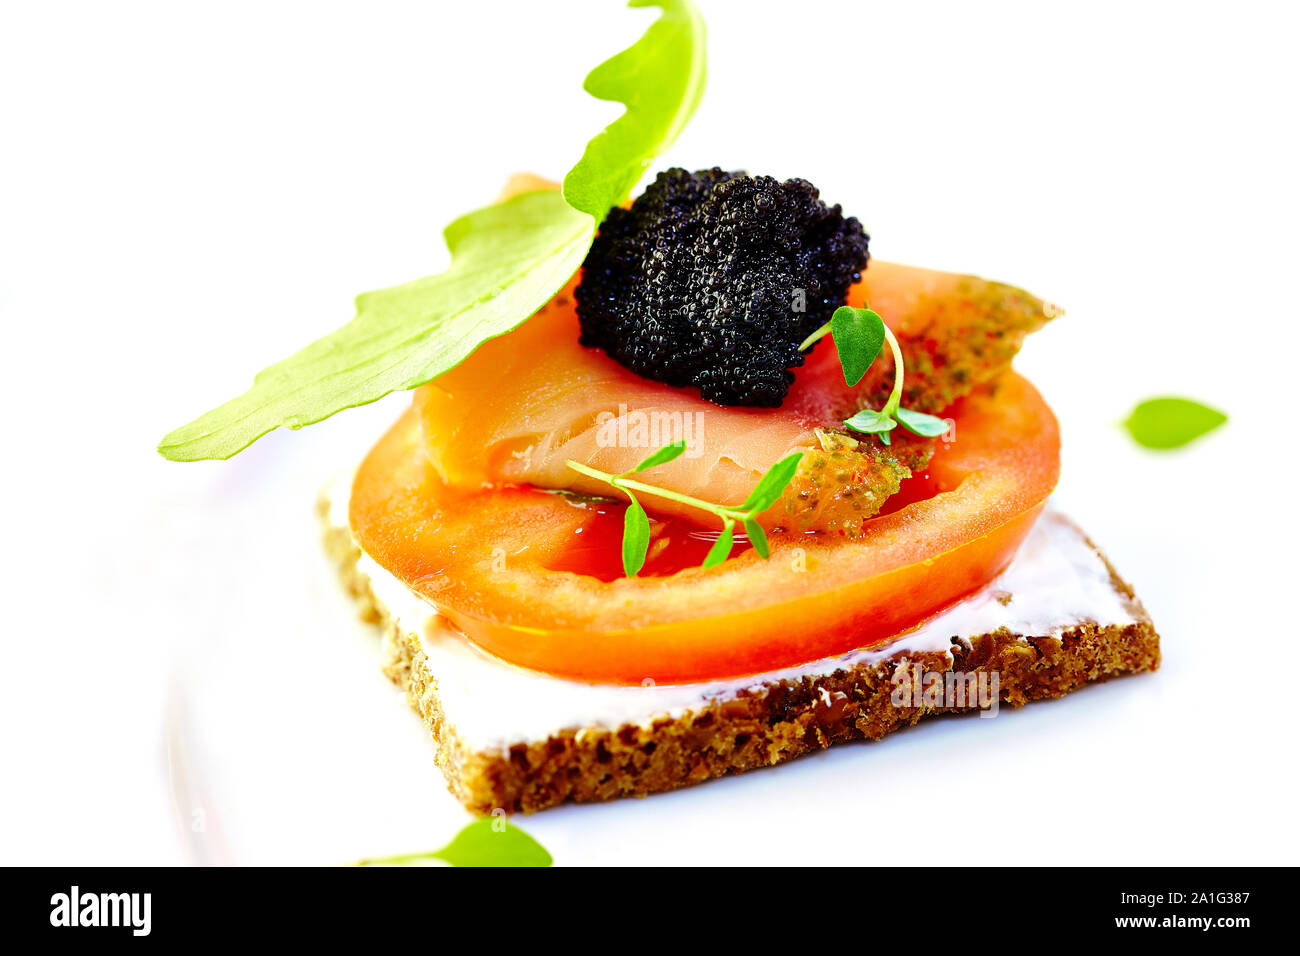 Canape avec saumon fumé, fromage, tomate et caviar. Image symbolique. Concept pour un repas sain et savoureux. Banque D'Images